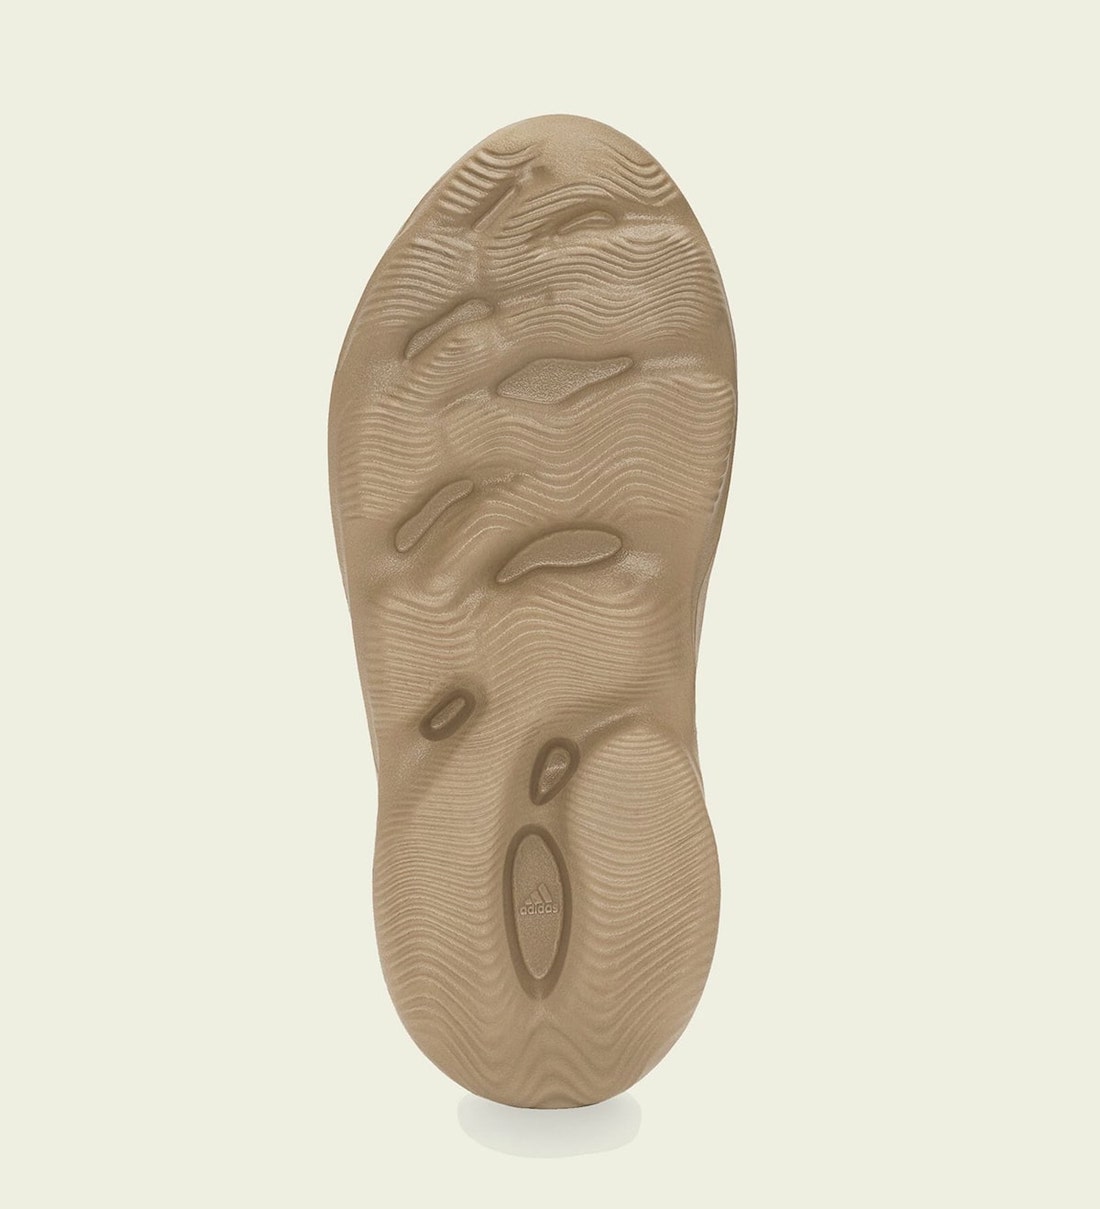 adidas Yeezy Foam Runner Ochre GW3354 Release Date - SBD